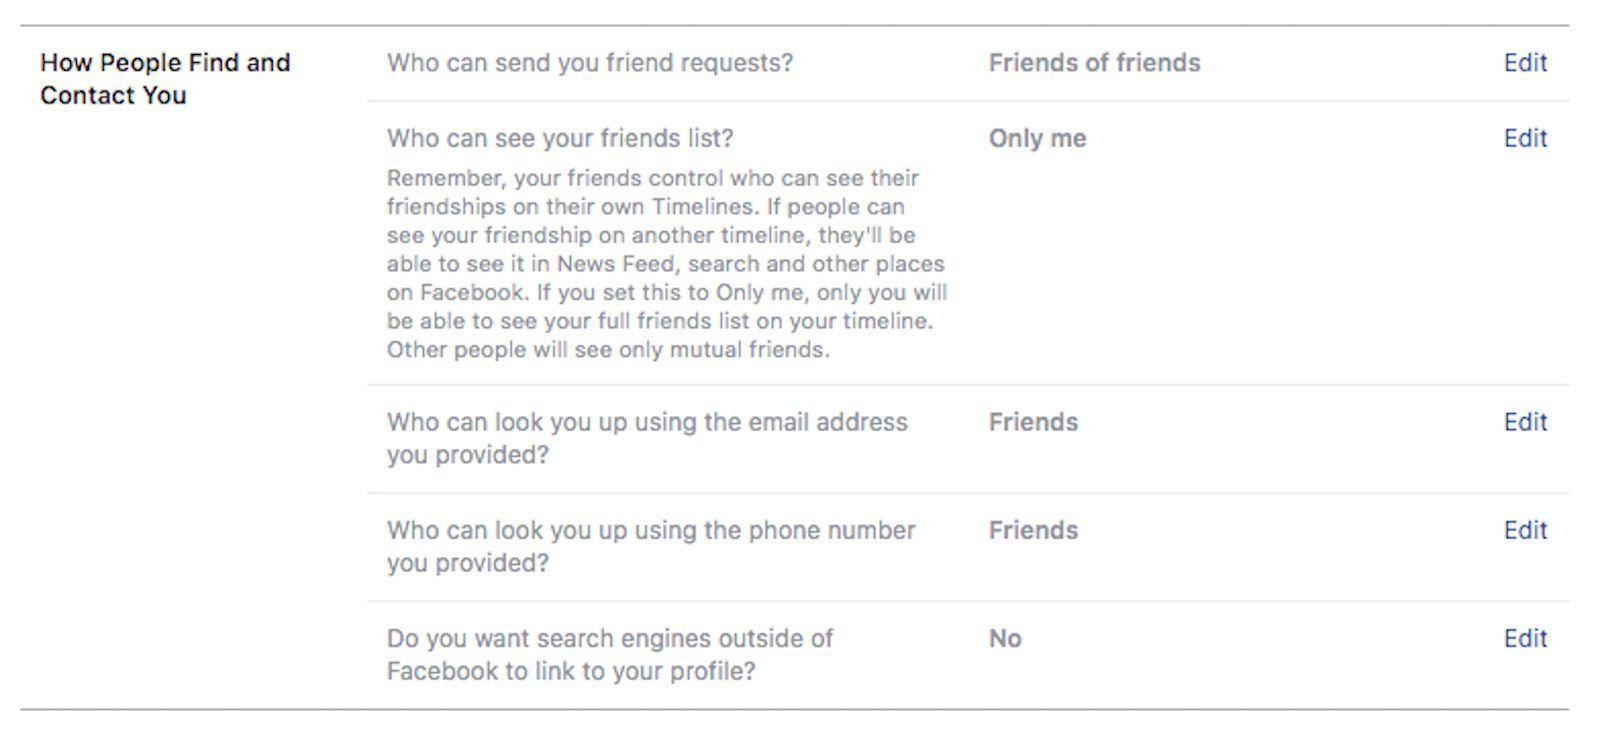 Изменение того, как люди могут найти и связаться с вами на Facebook.com